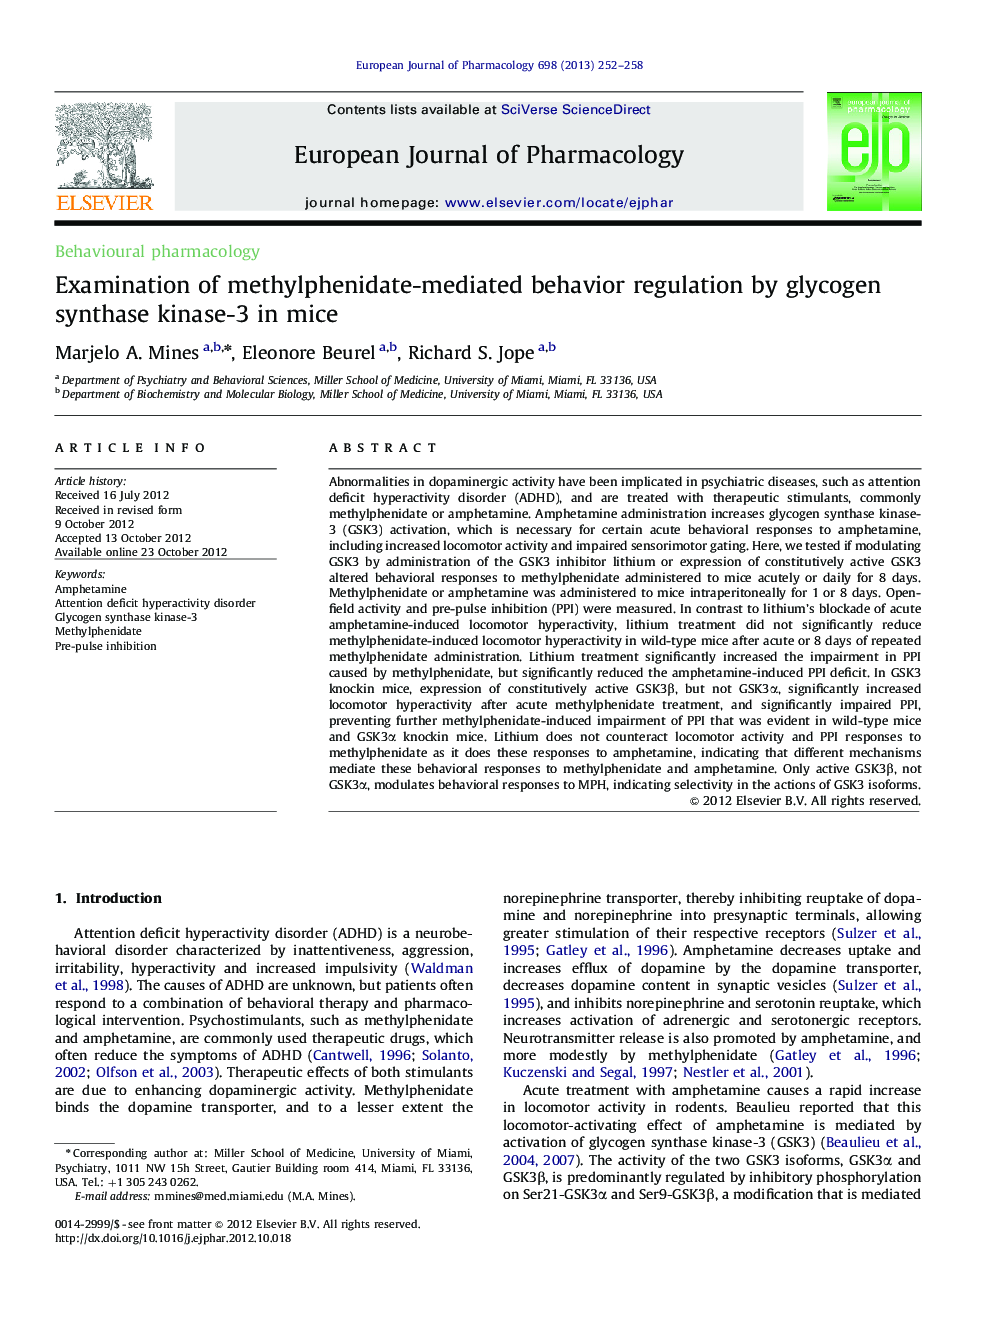 بررسی تنظیم رفتار مشتمل بر متیل فنیدات توسط گلیکوژن سنتاز کیناز 3 در موش سوری 